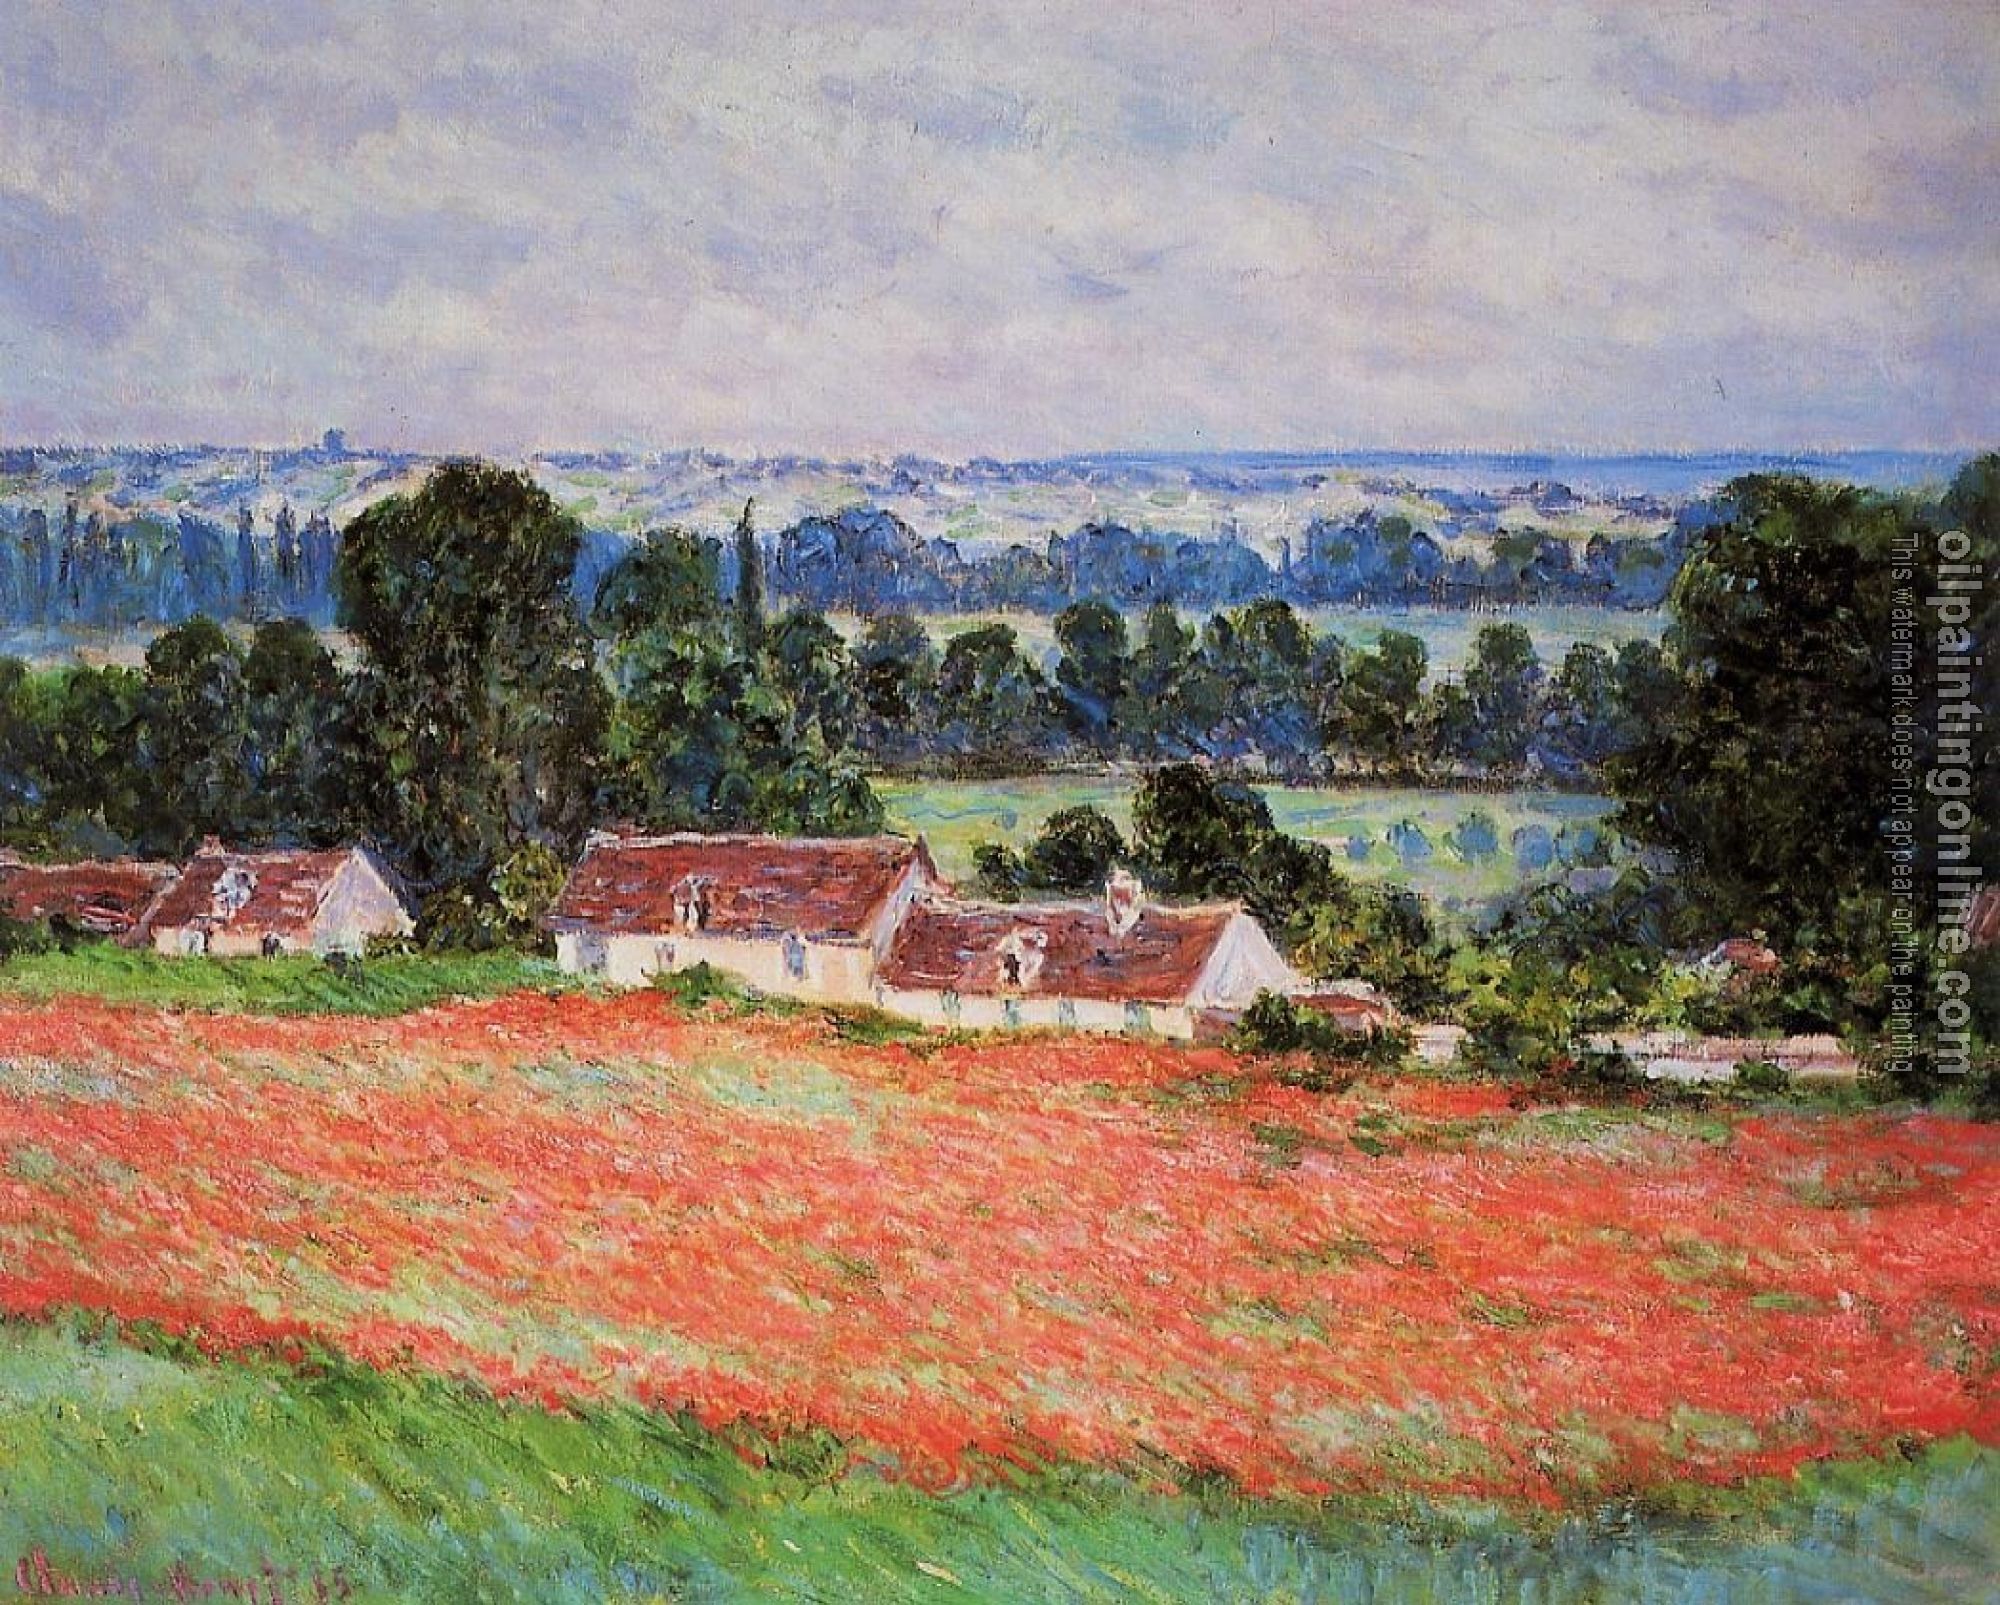 Monet, Claude Oscar - Poppy Field, Giverny